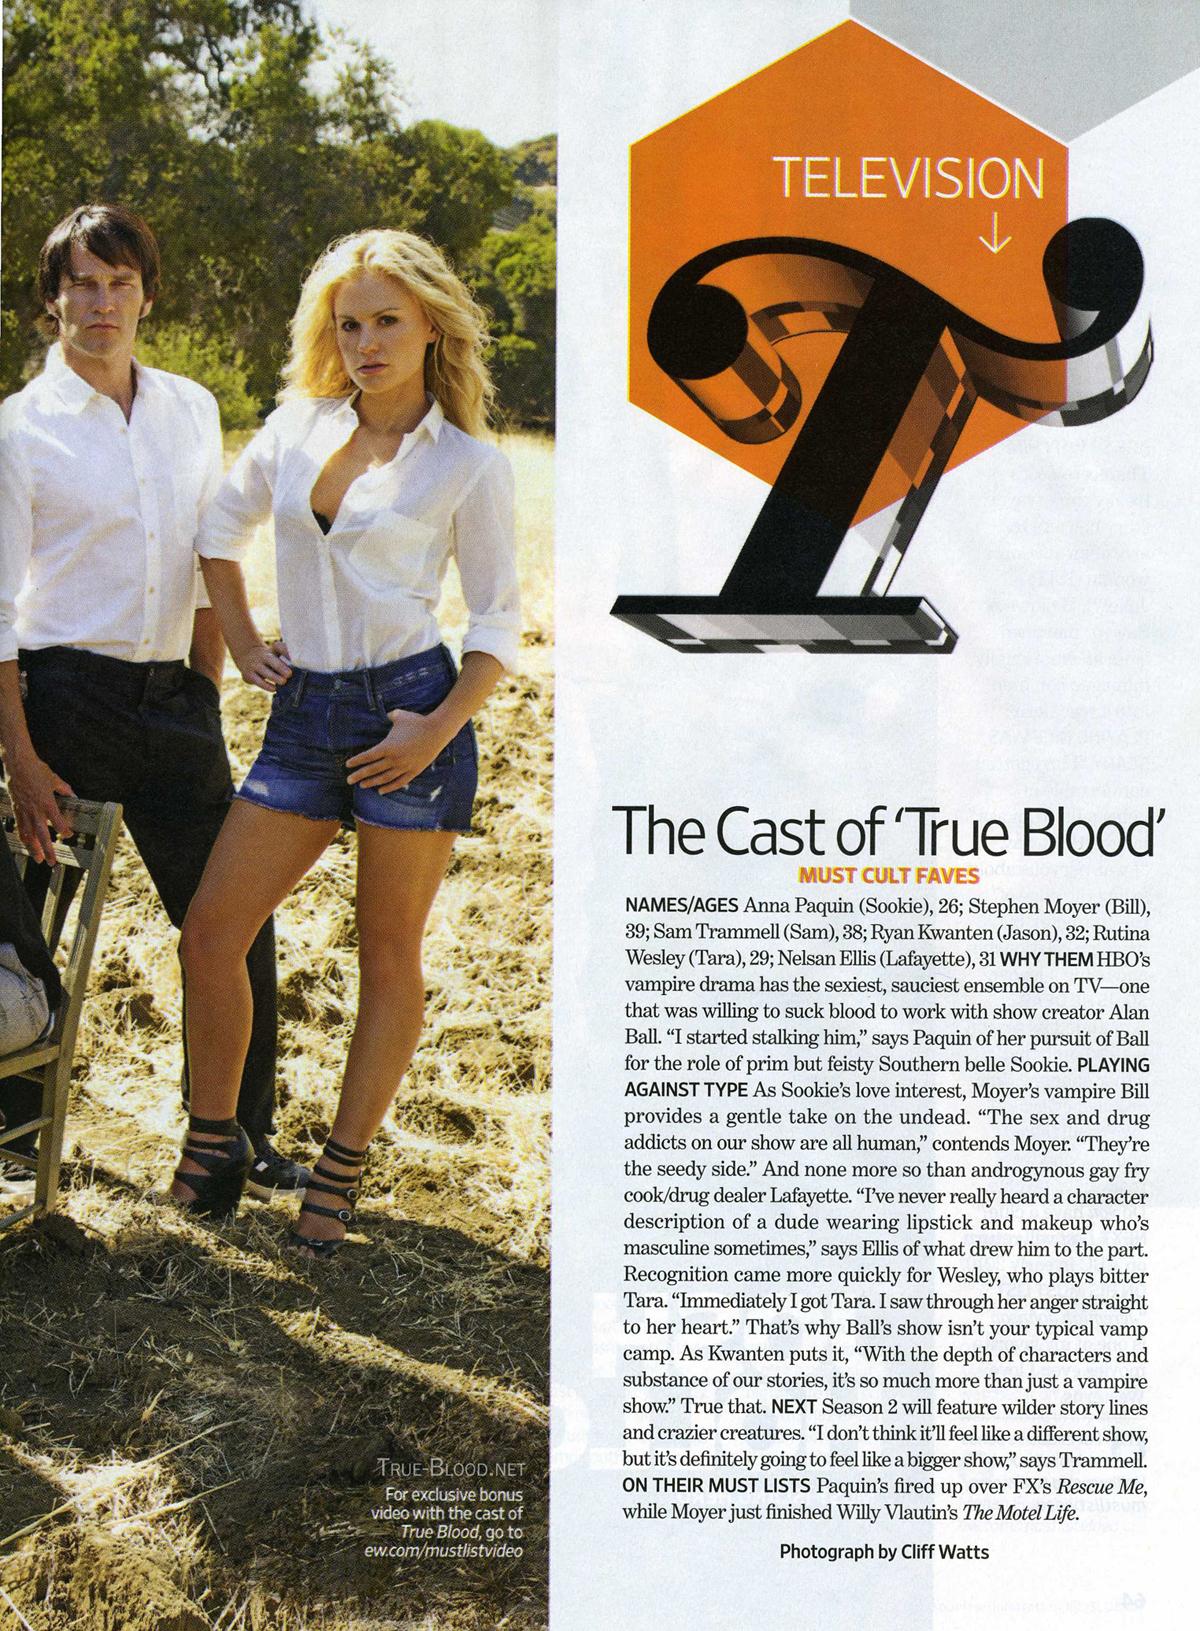 [image] Casting de True Blood